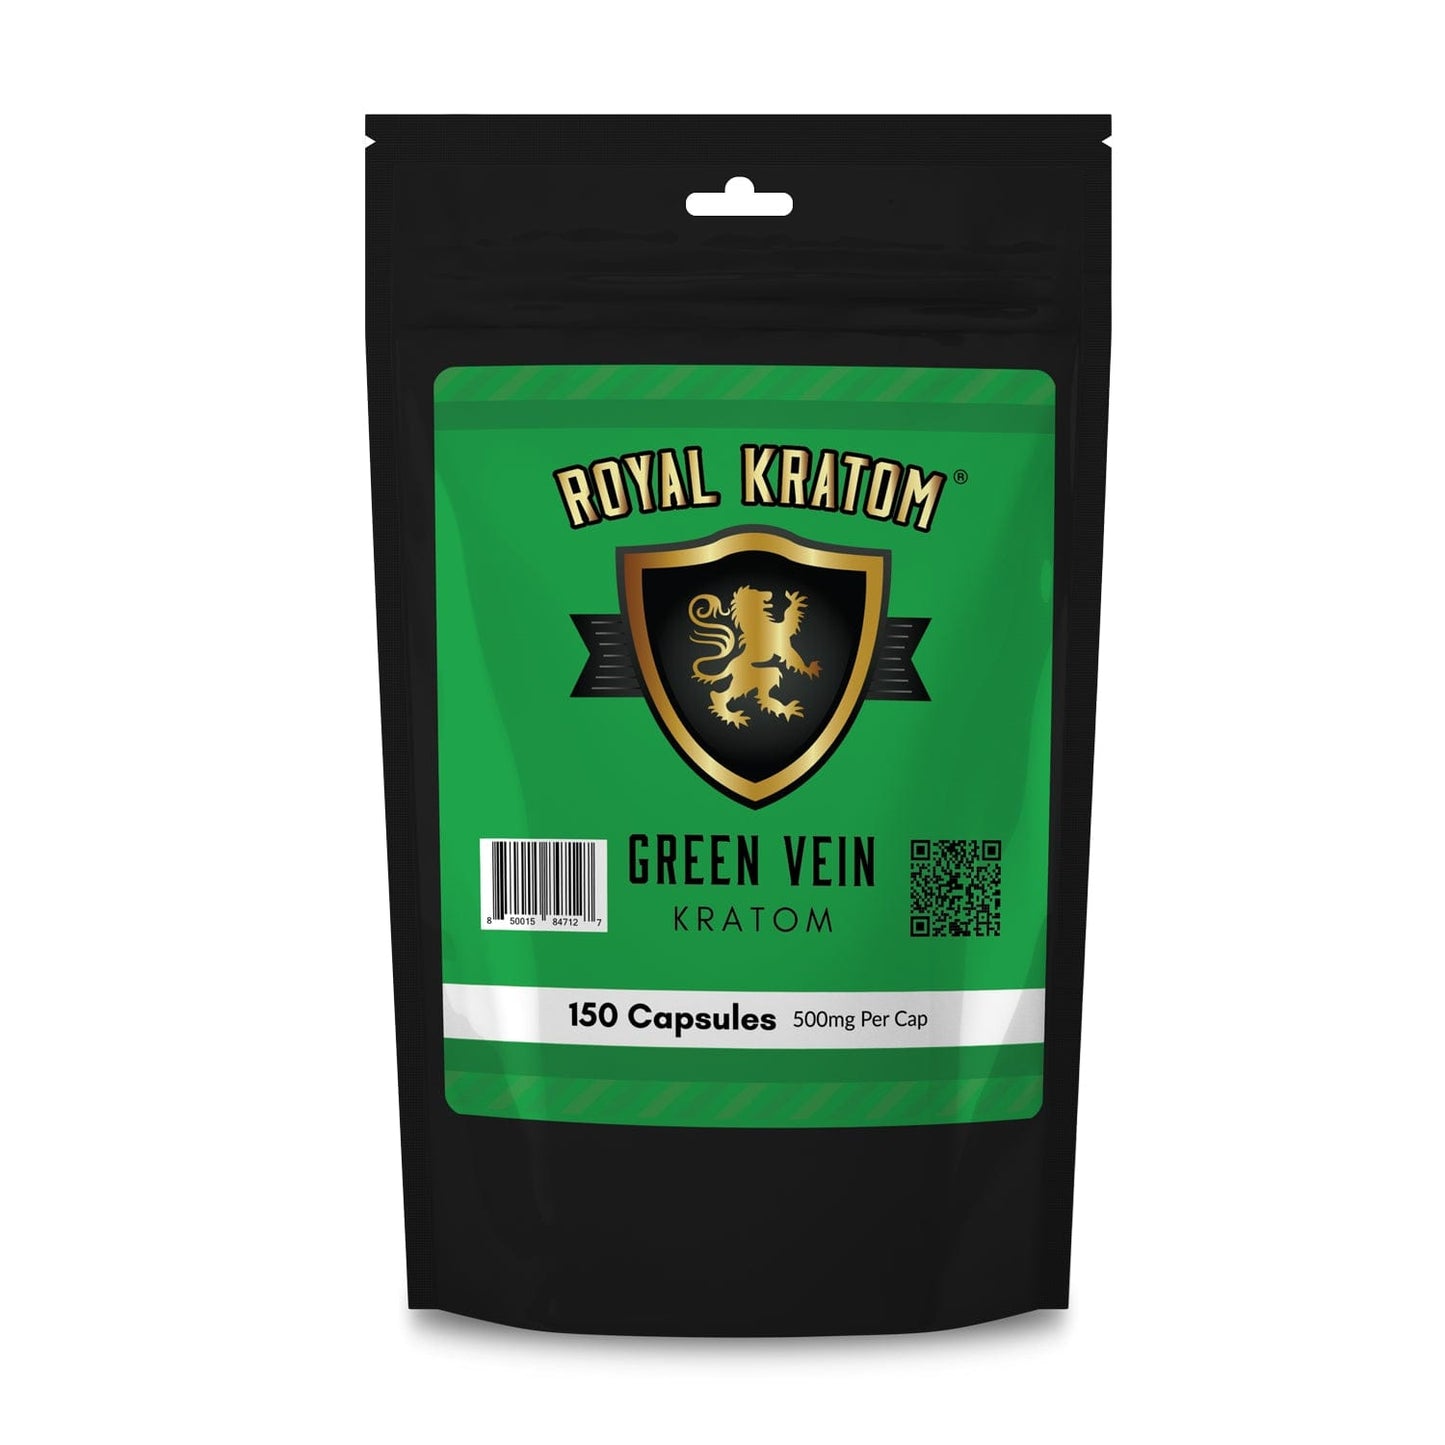 Royal Kratom green vein kratom capsules 150 count package